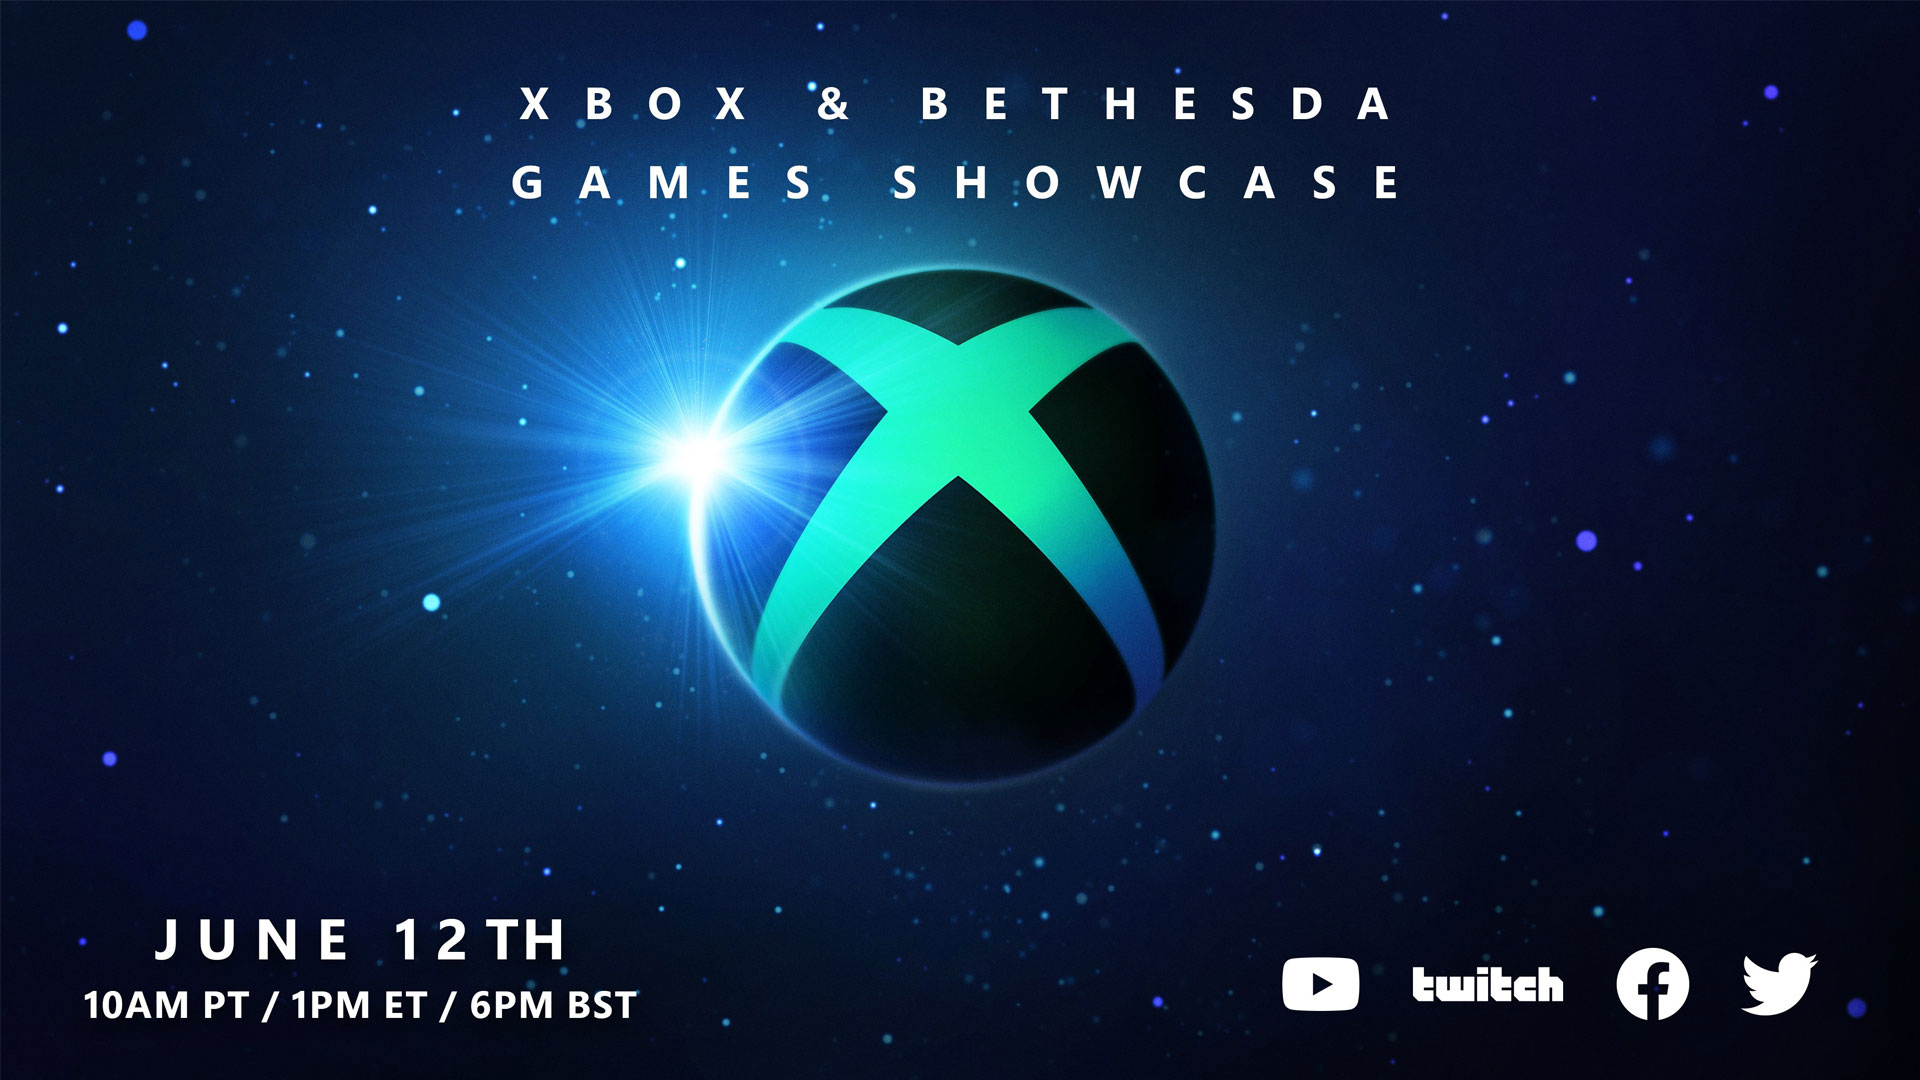 We Recap The Xbox & Bethesda Games Showcase From E3 2021